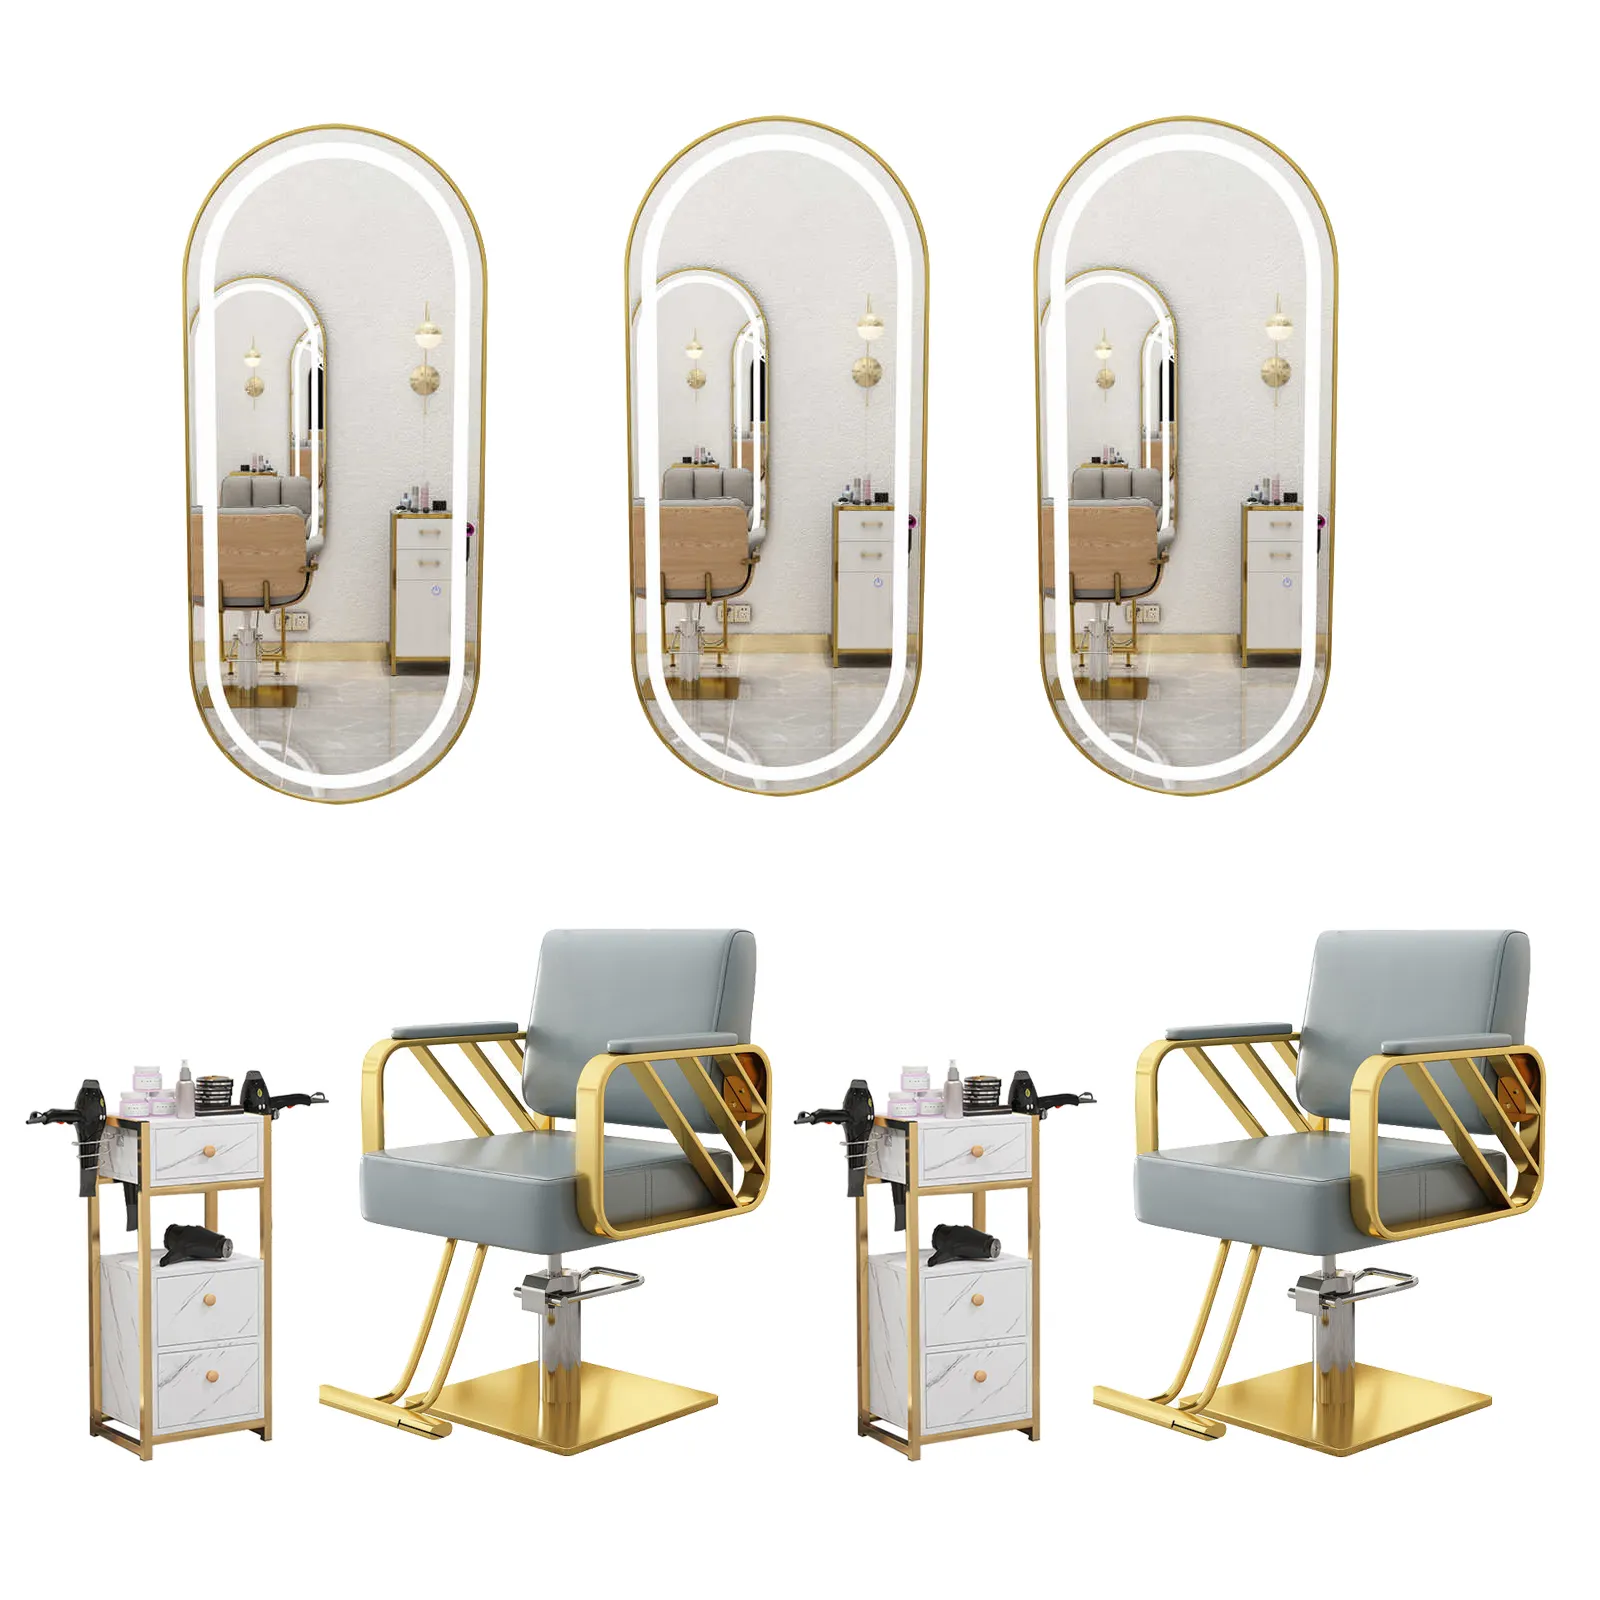 One stop soluzione barbiere mobili acconciatura sedia e specchio stazione mobili set per salone di bellezza